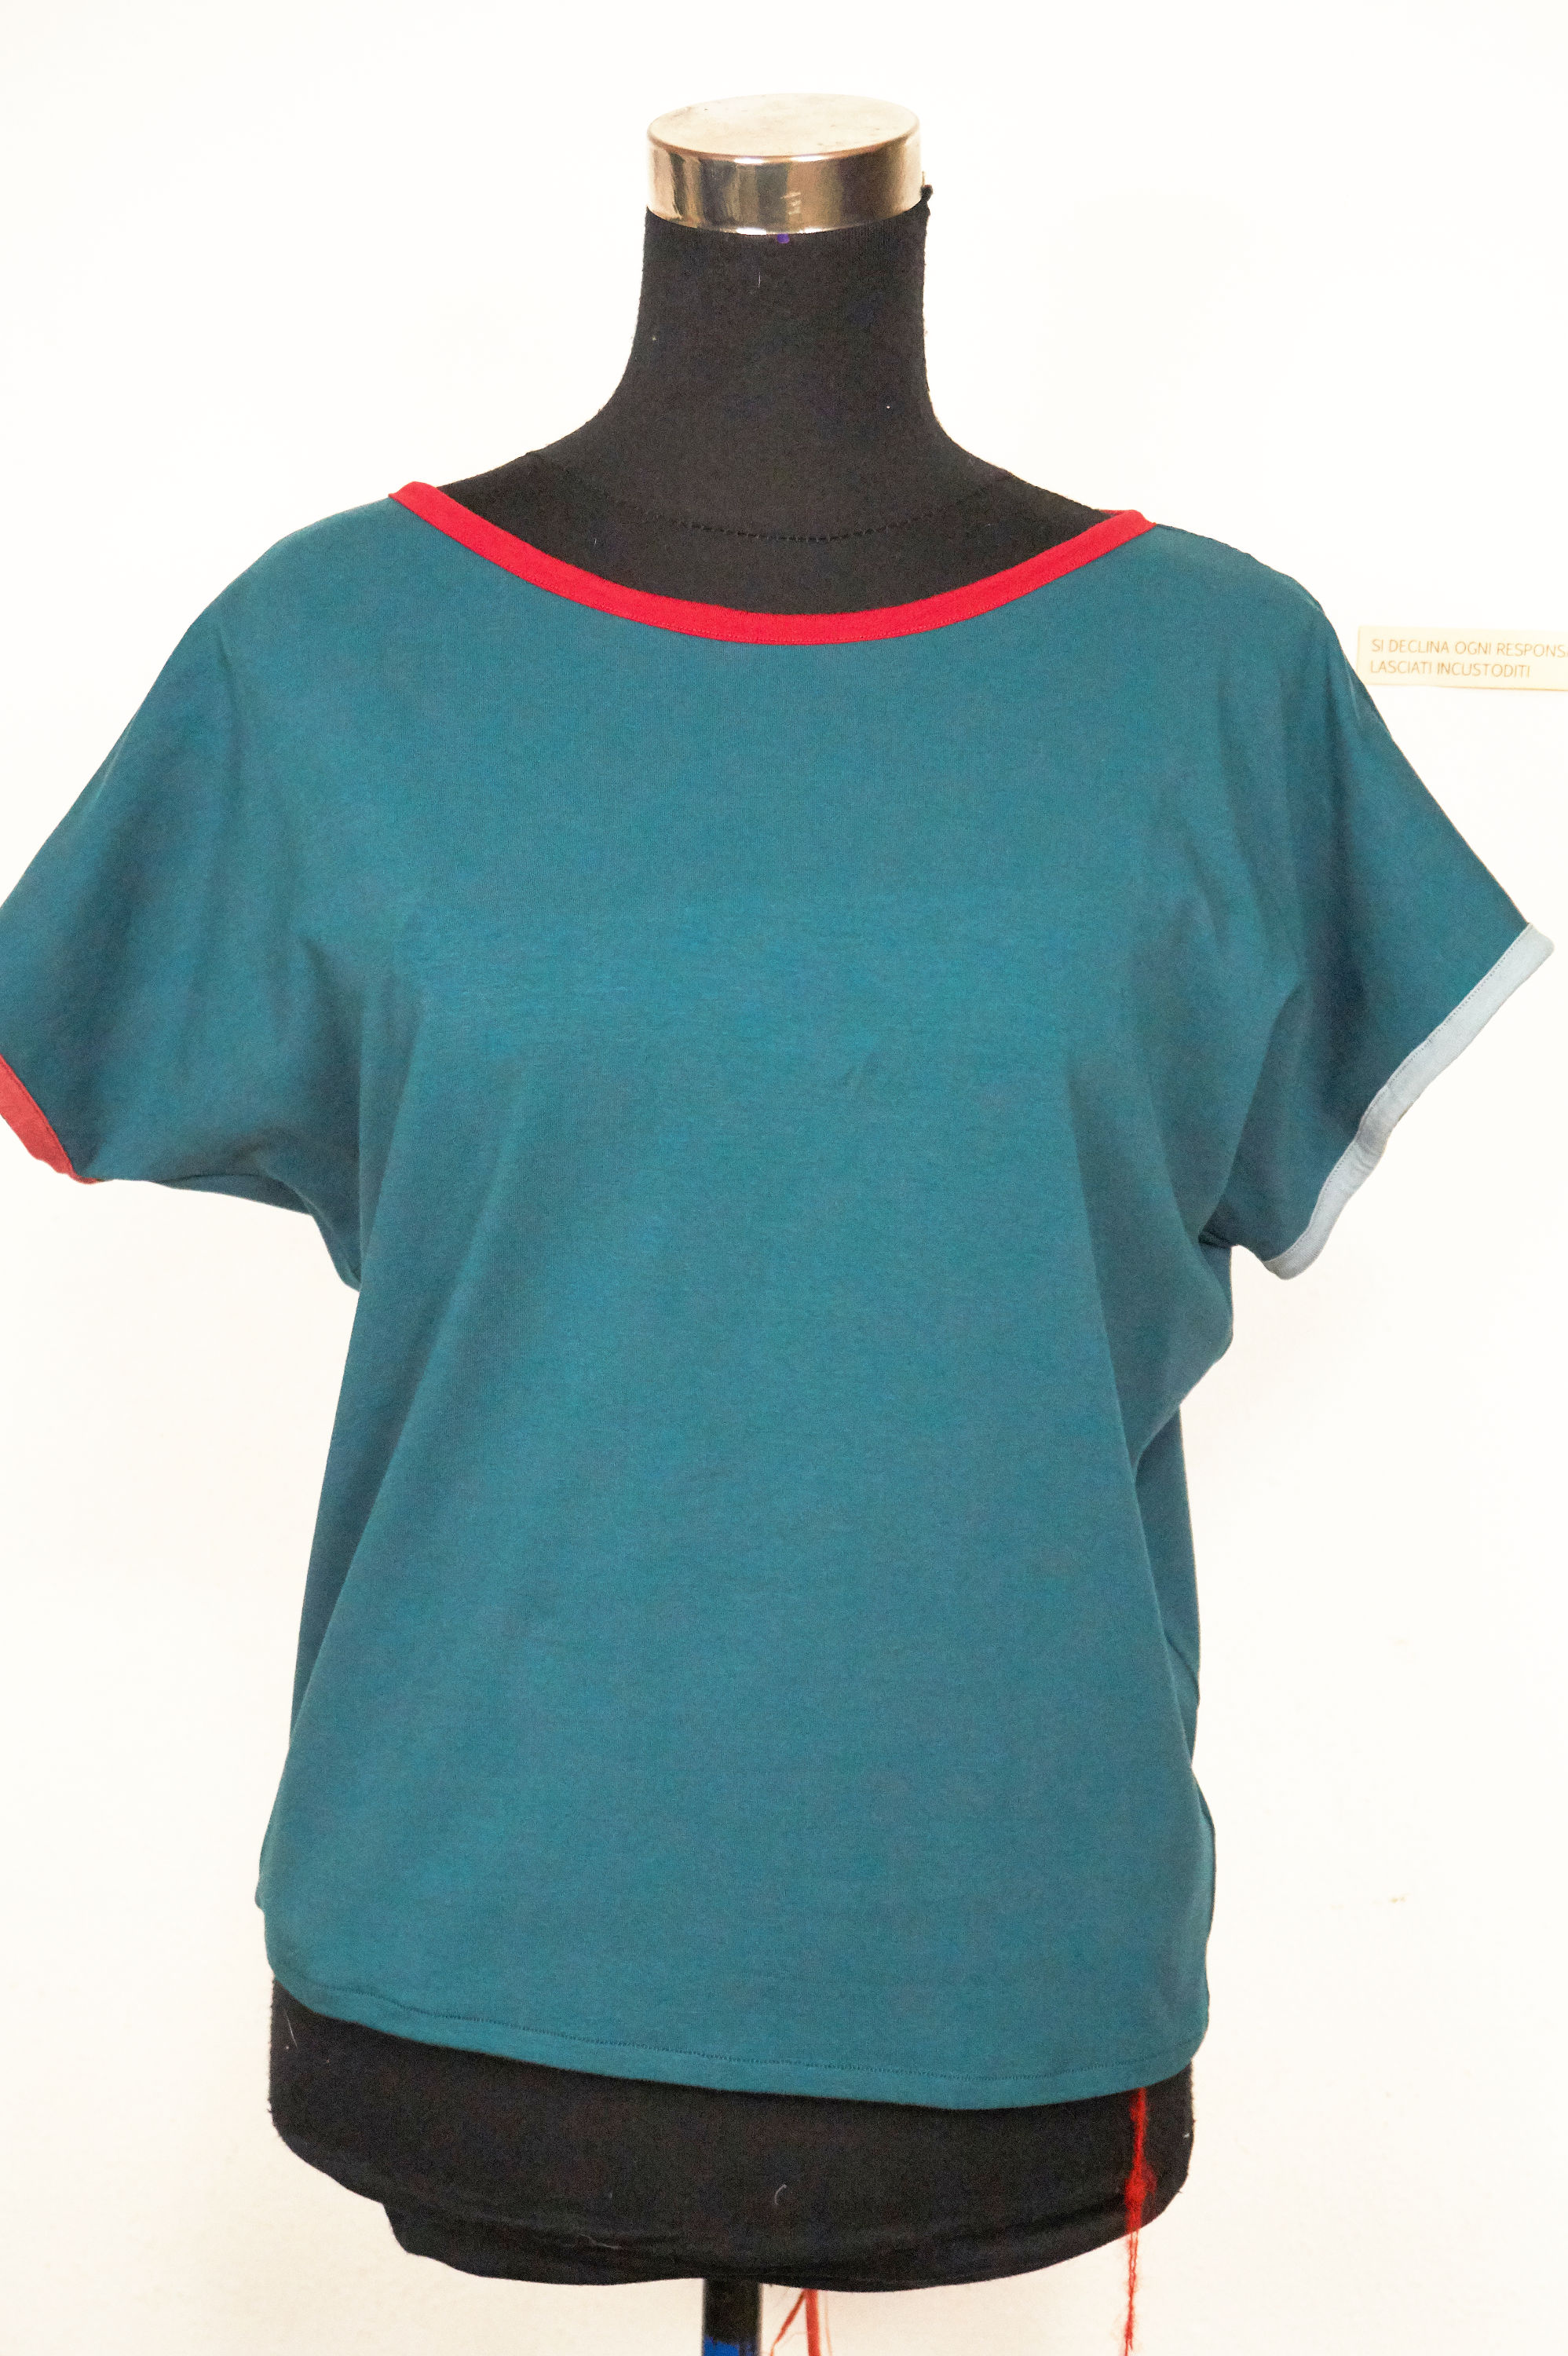 Maglietta morbida in cotone biologico, colore ottanio con inserti rosso, rosso mattone e azzurro